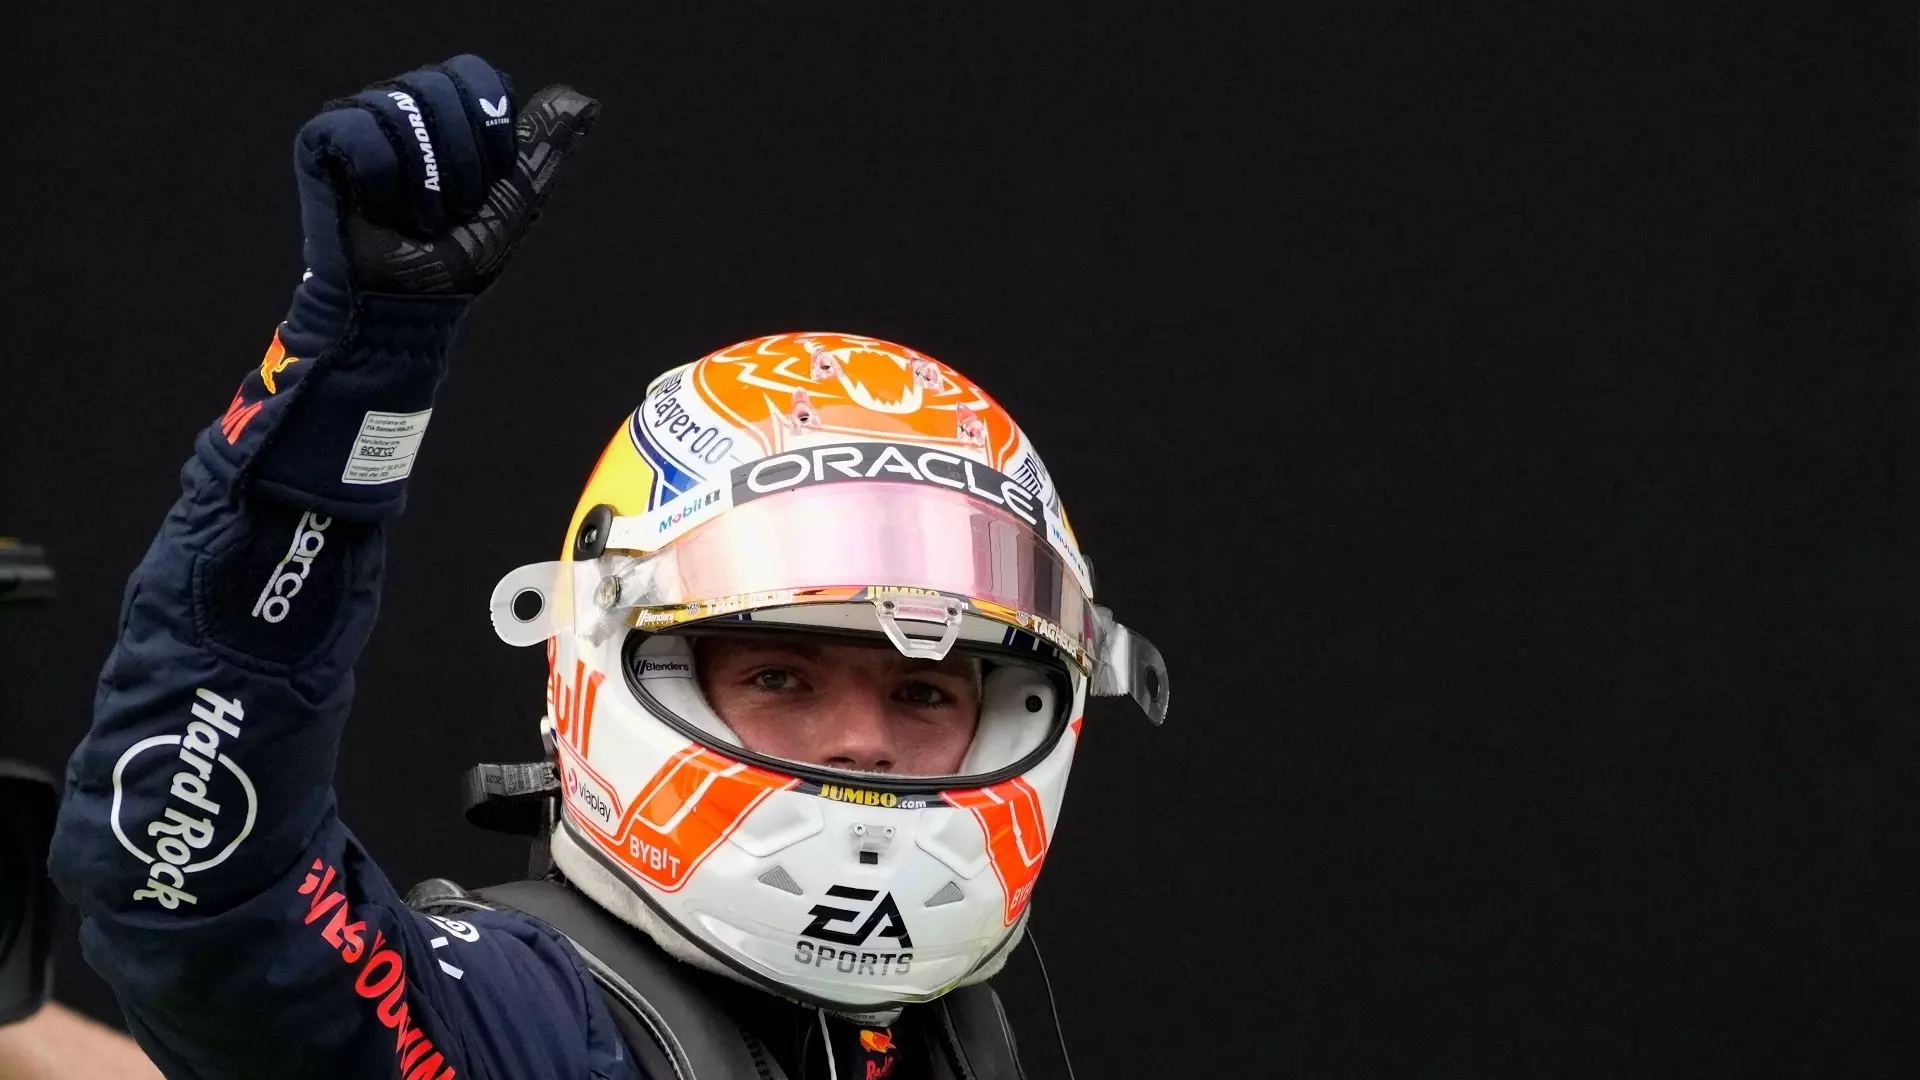 Qualifiche Austria, Max Verstappen attacca la regola dei track limits